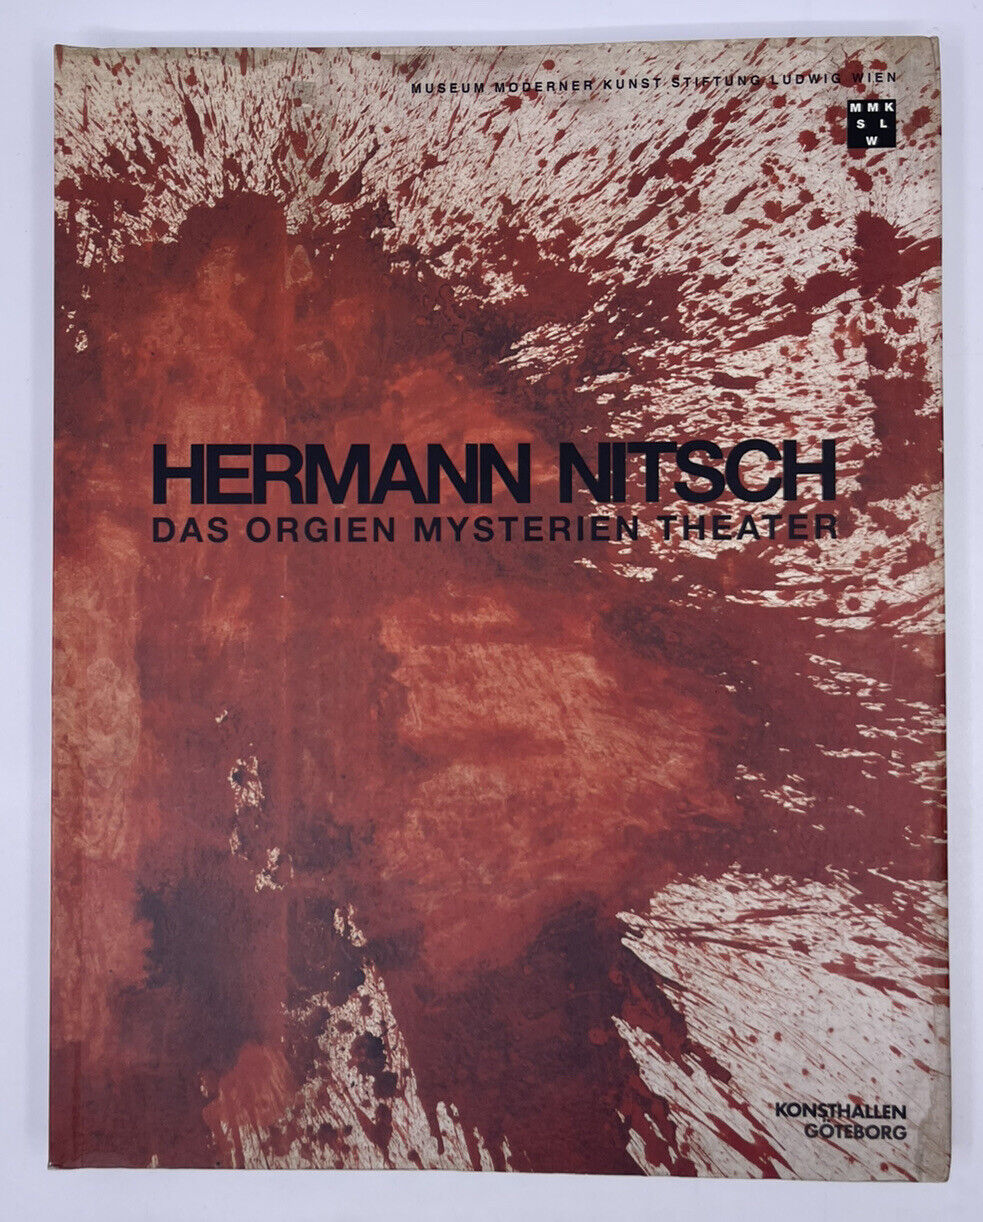 Herman Nitsch Das Orgien Mysterien Theater Exhibition July 4 - August 19 Wien